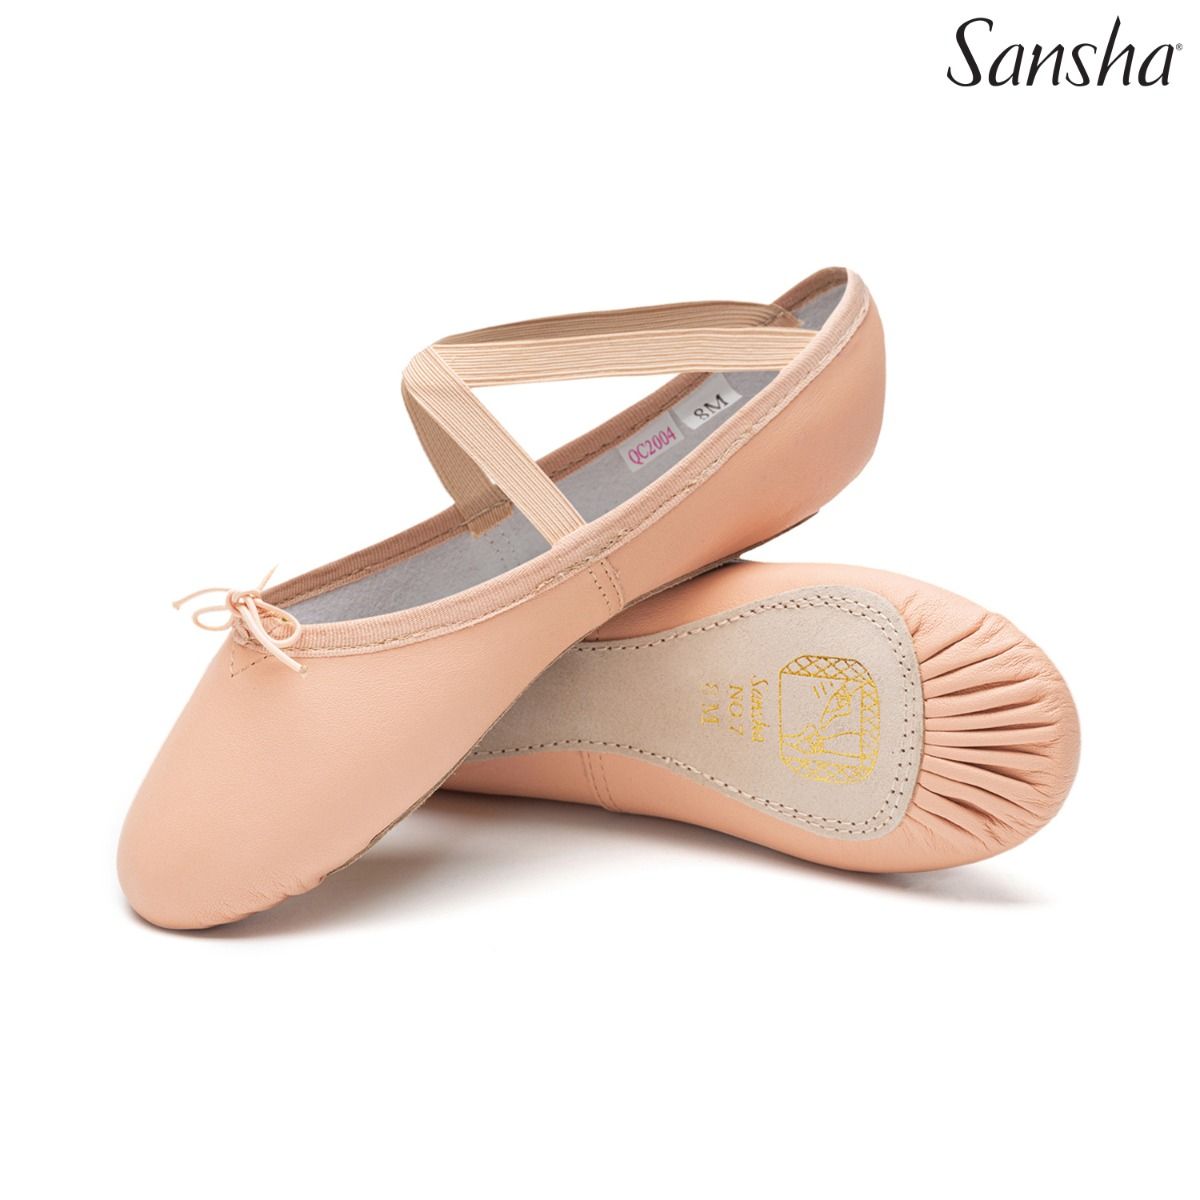 Sansha Nijinsky Full Sole Leather Ballet Slippers